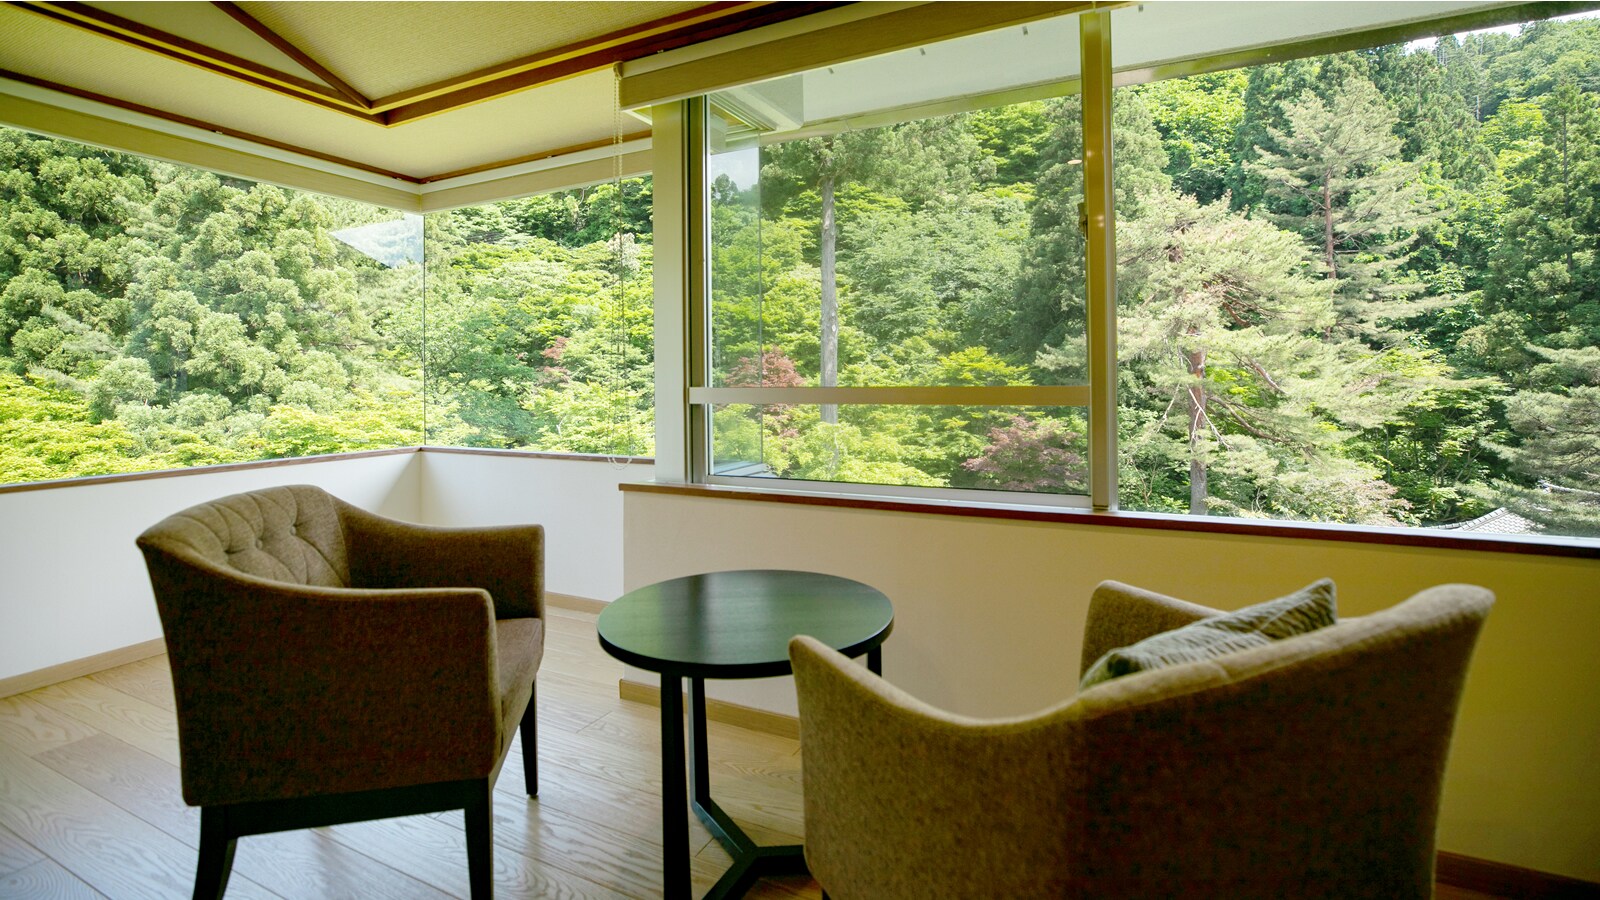 【本馆日西合璧式房间】从宽大的窗户可以眺望广阔的庭园。